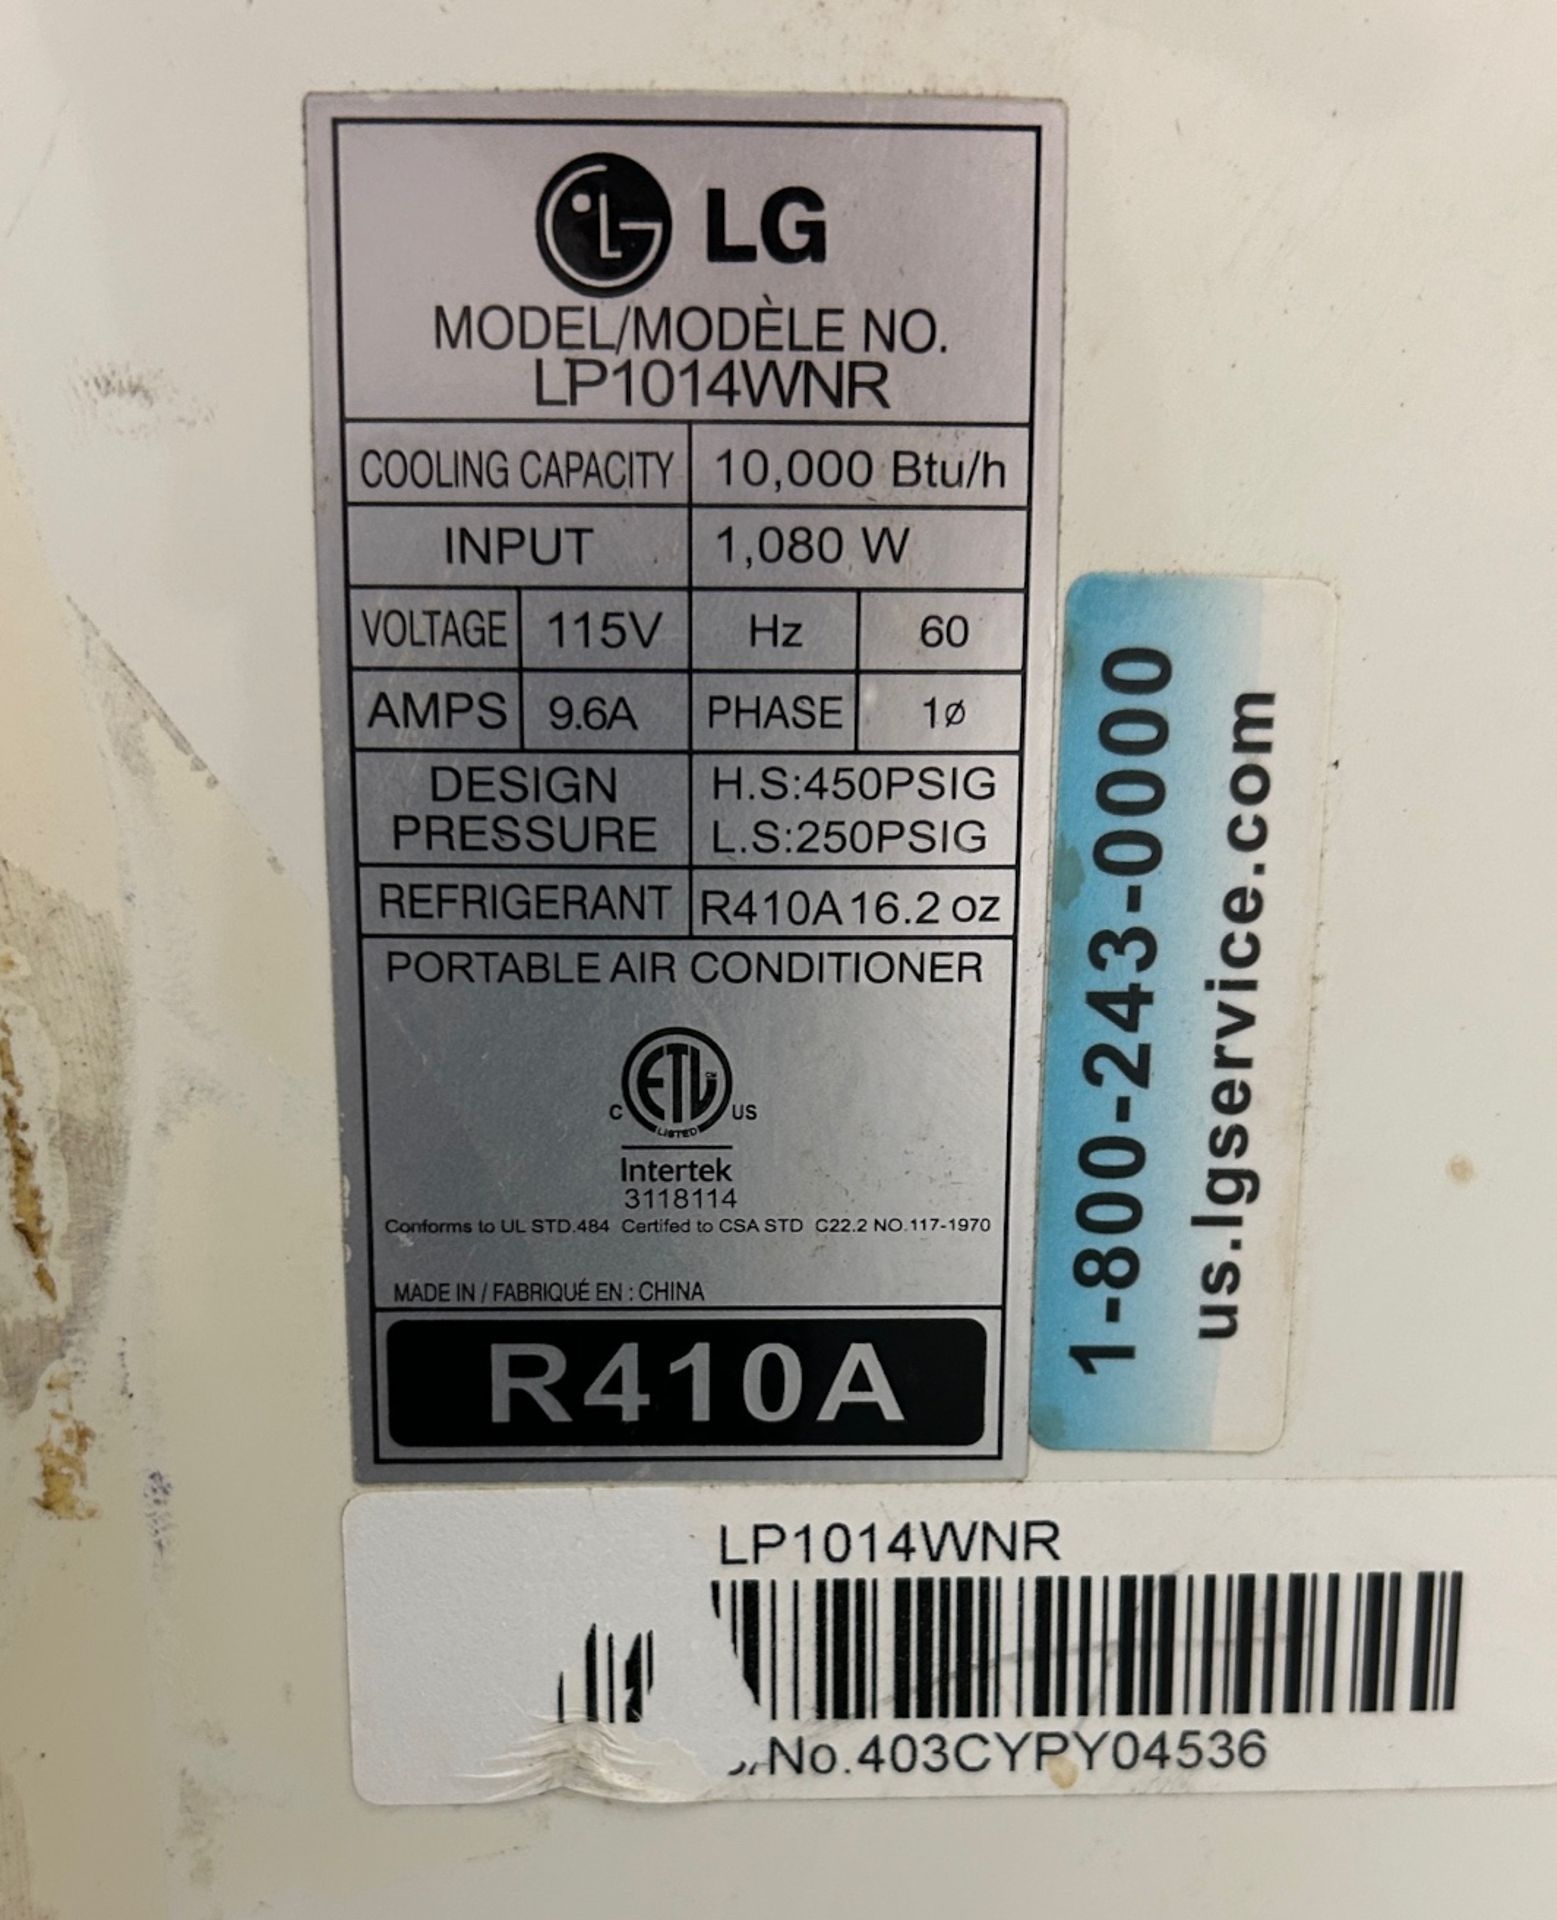 LG Portable Air Conditioner LP1014WNR 10,000 BTU - Image 2 of 2